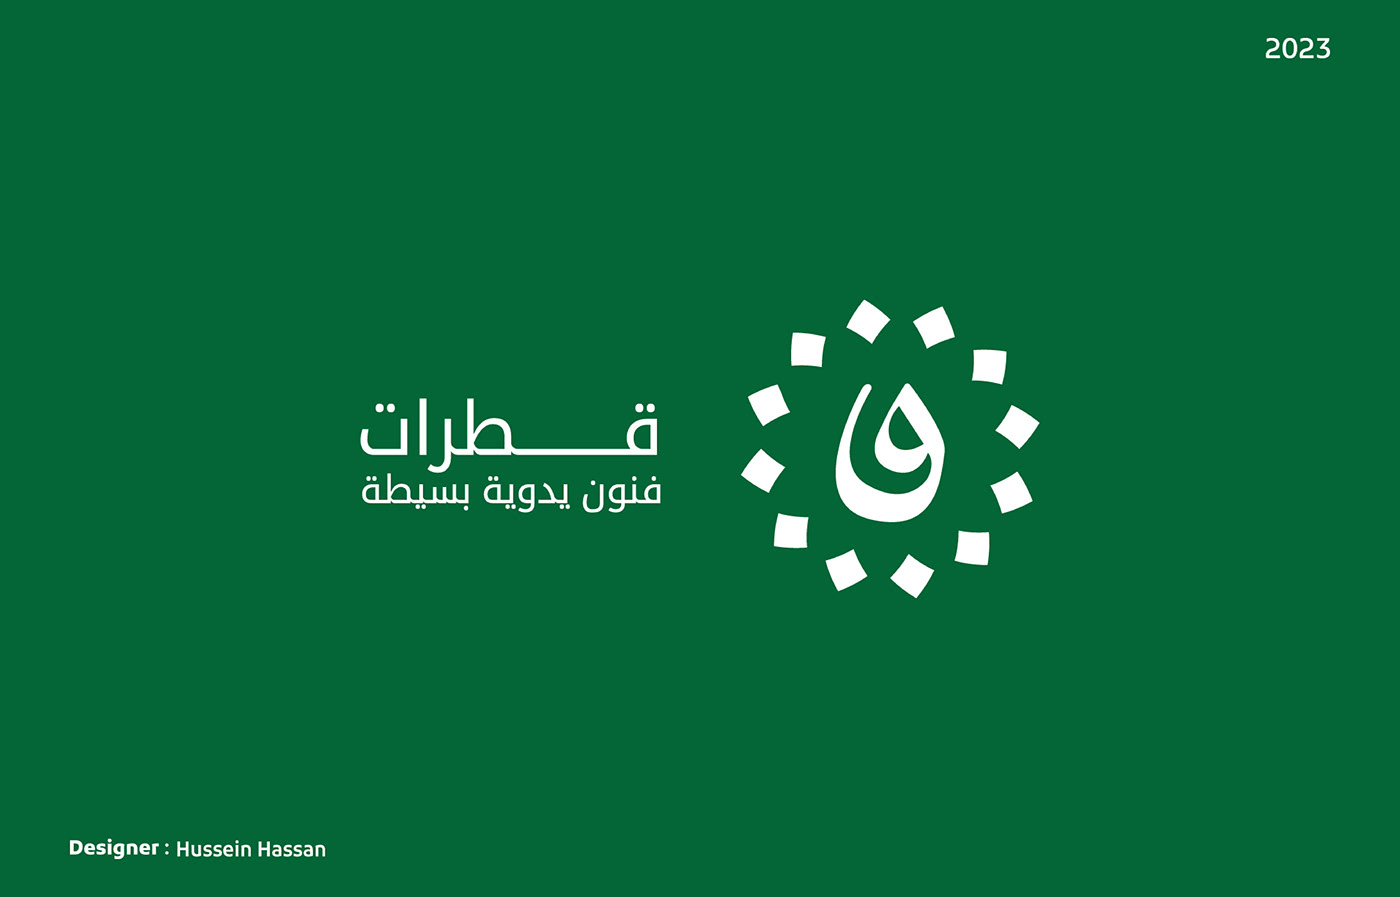 logo gaza arabic logos Logotype logofolio 2023 palestine brand identity Маркс 토론토벳토토